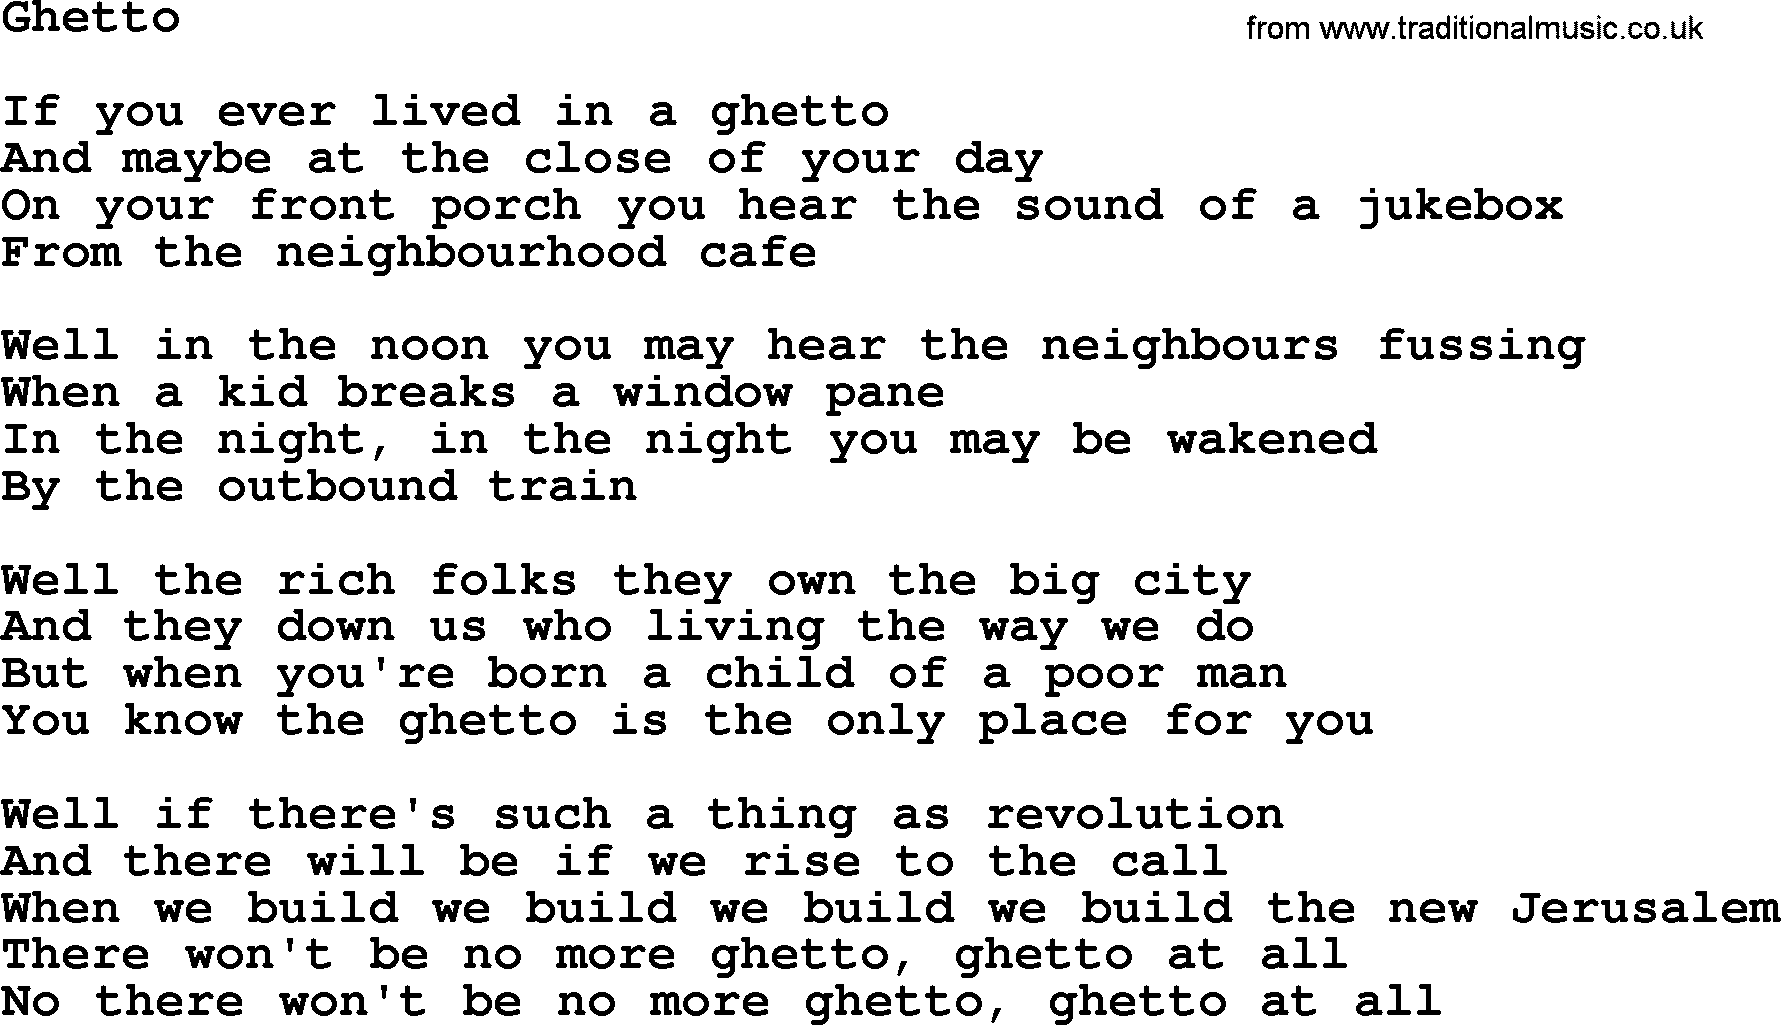 Joan Baez song Ghetto, lyrics